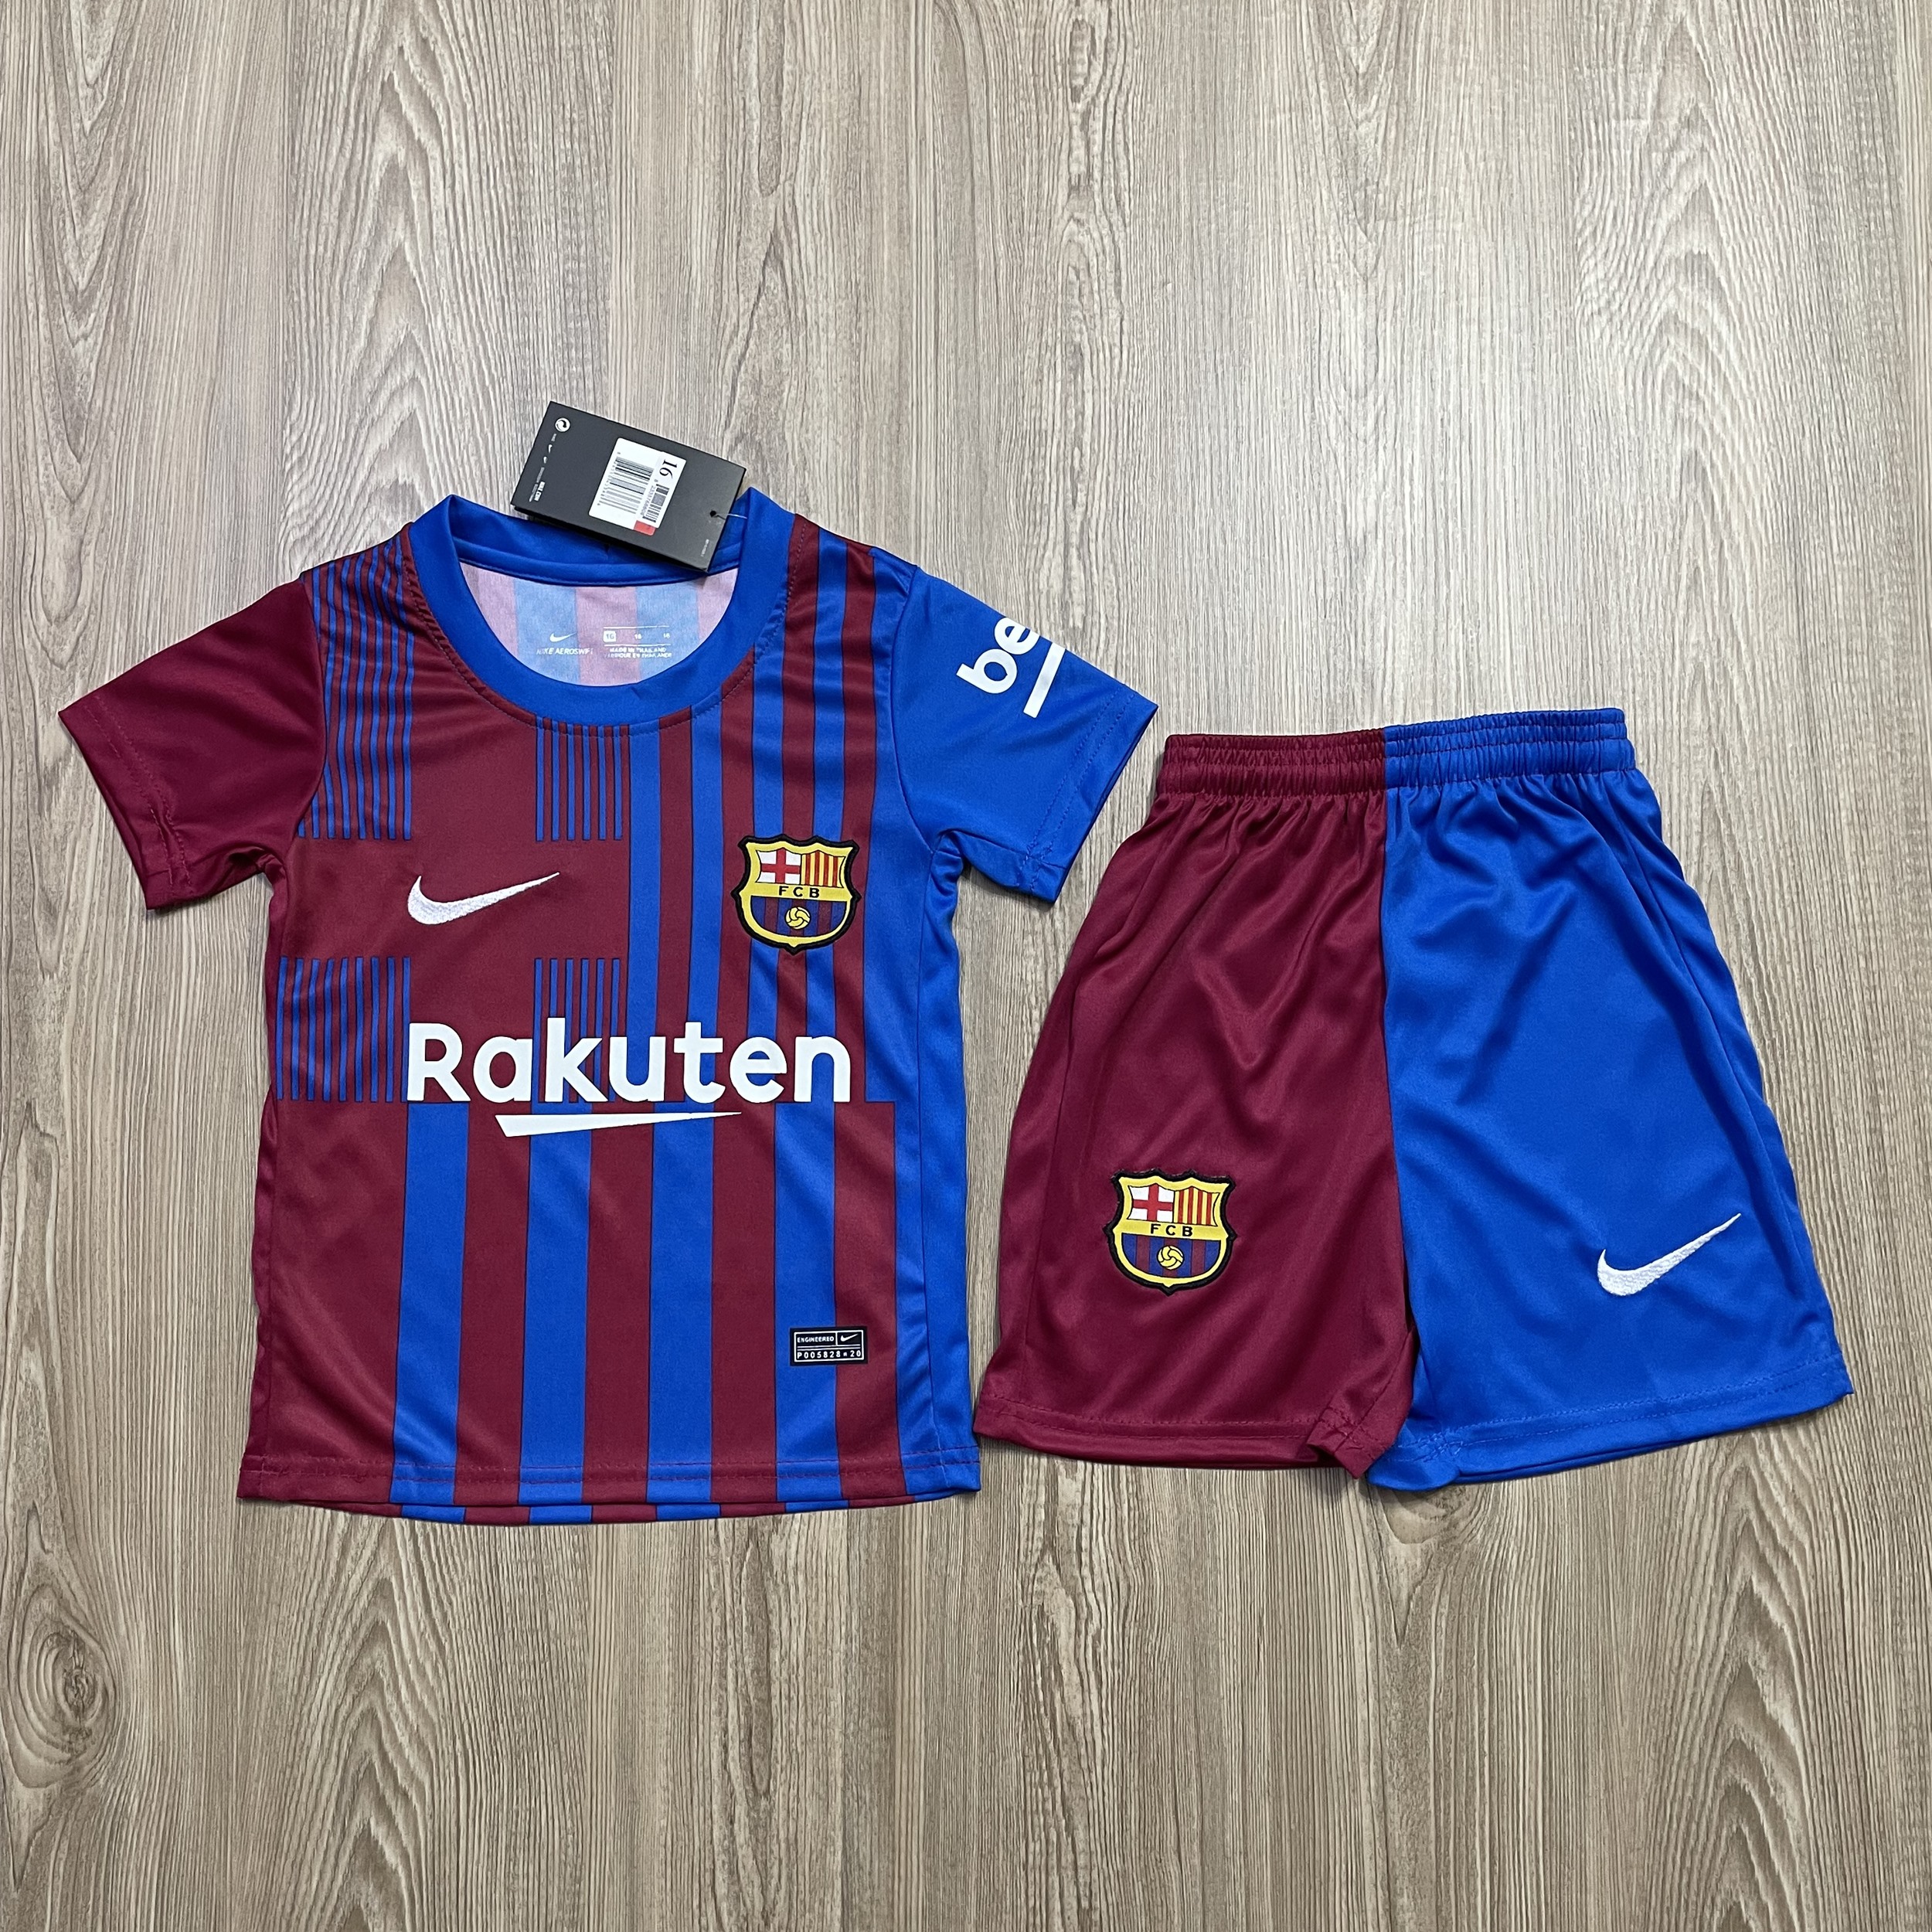 ชุดบอลเด็ก Barcelona ชุดกีฬาเด็กทีม เสื้อทีมเชลซี ซื้อครั้งเดียวได้ทั้งชุด (เสื้อ+กางเกง) ตัวเดียวในราคาส่ง สินค้าเกรด-A